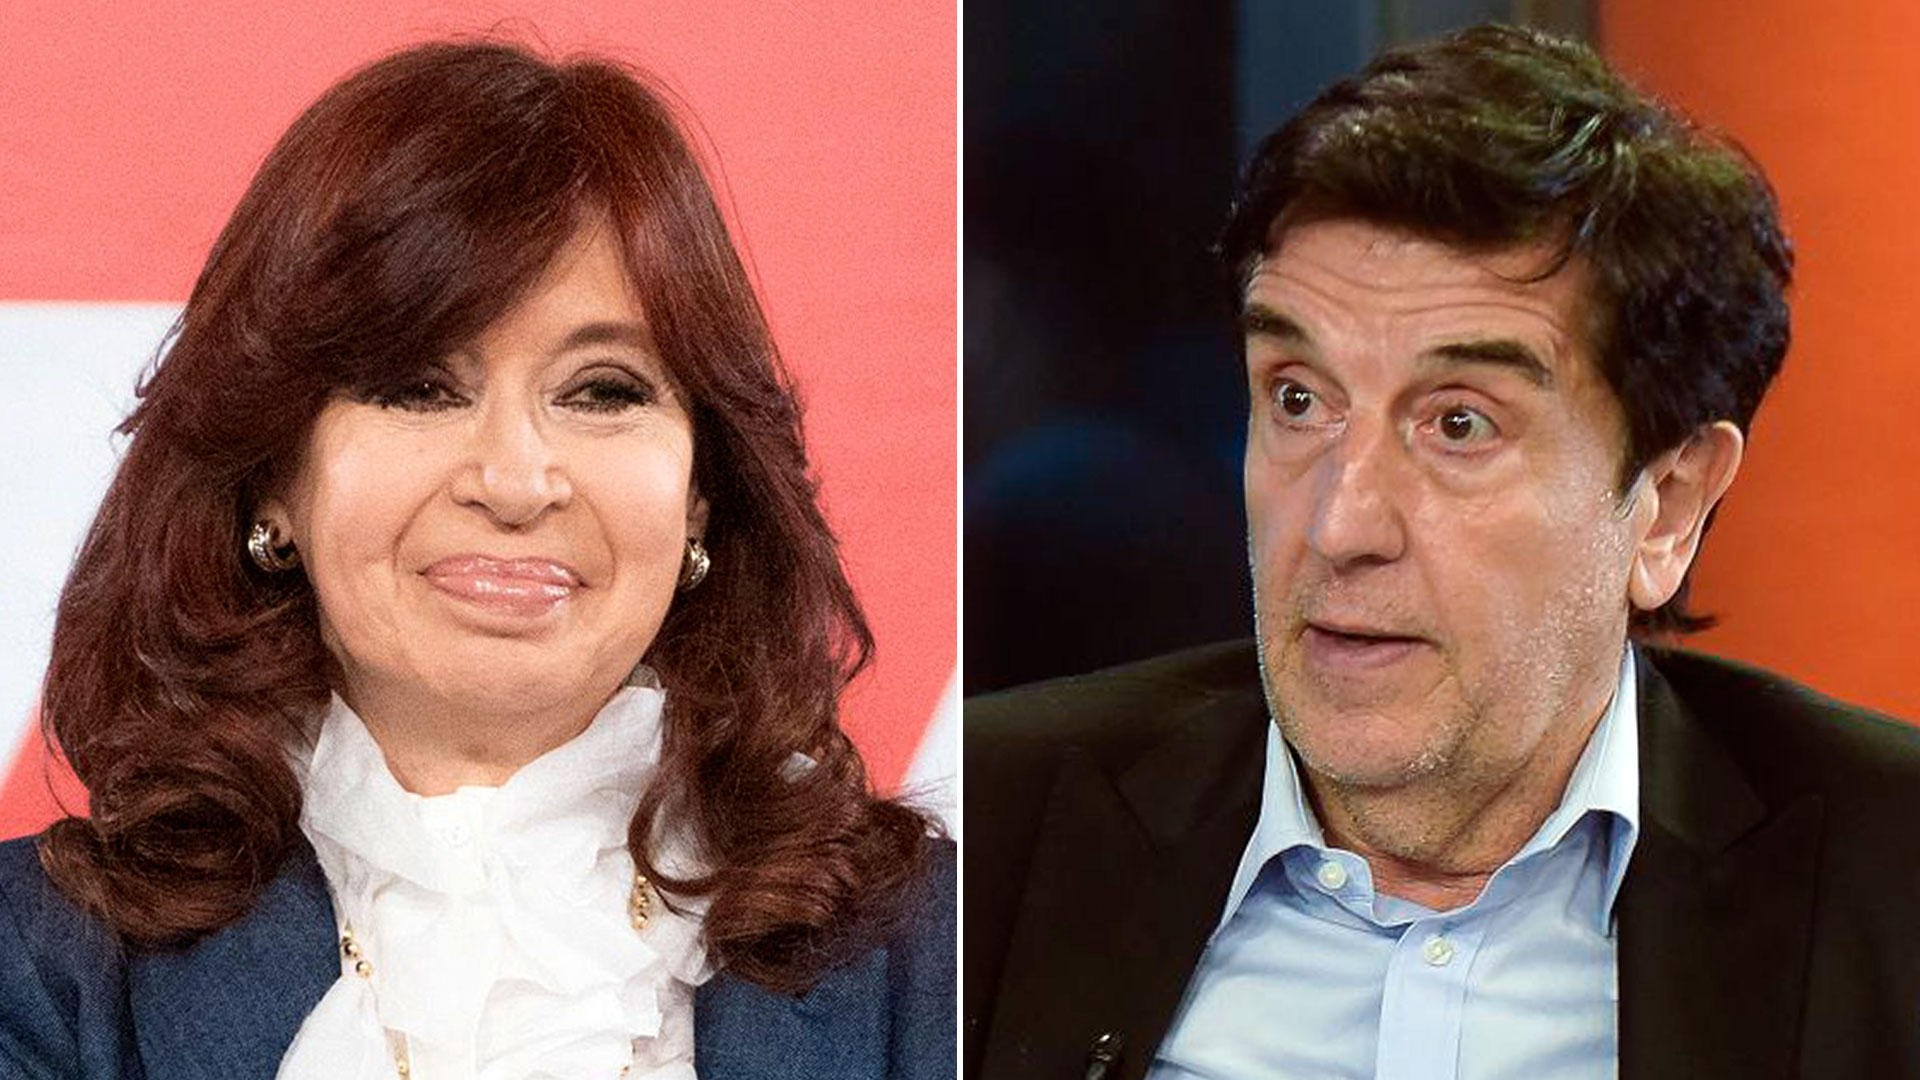 Melconian habló de su reunión con Cristina Kirchner: “Hay que darle la chance a que la gente cambie” 